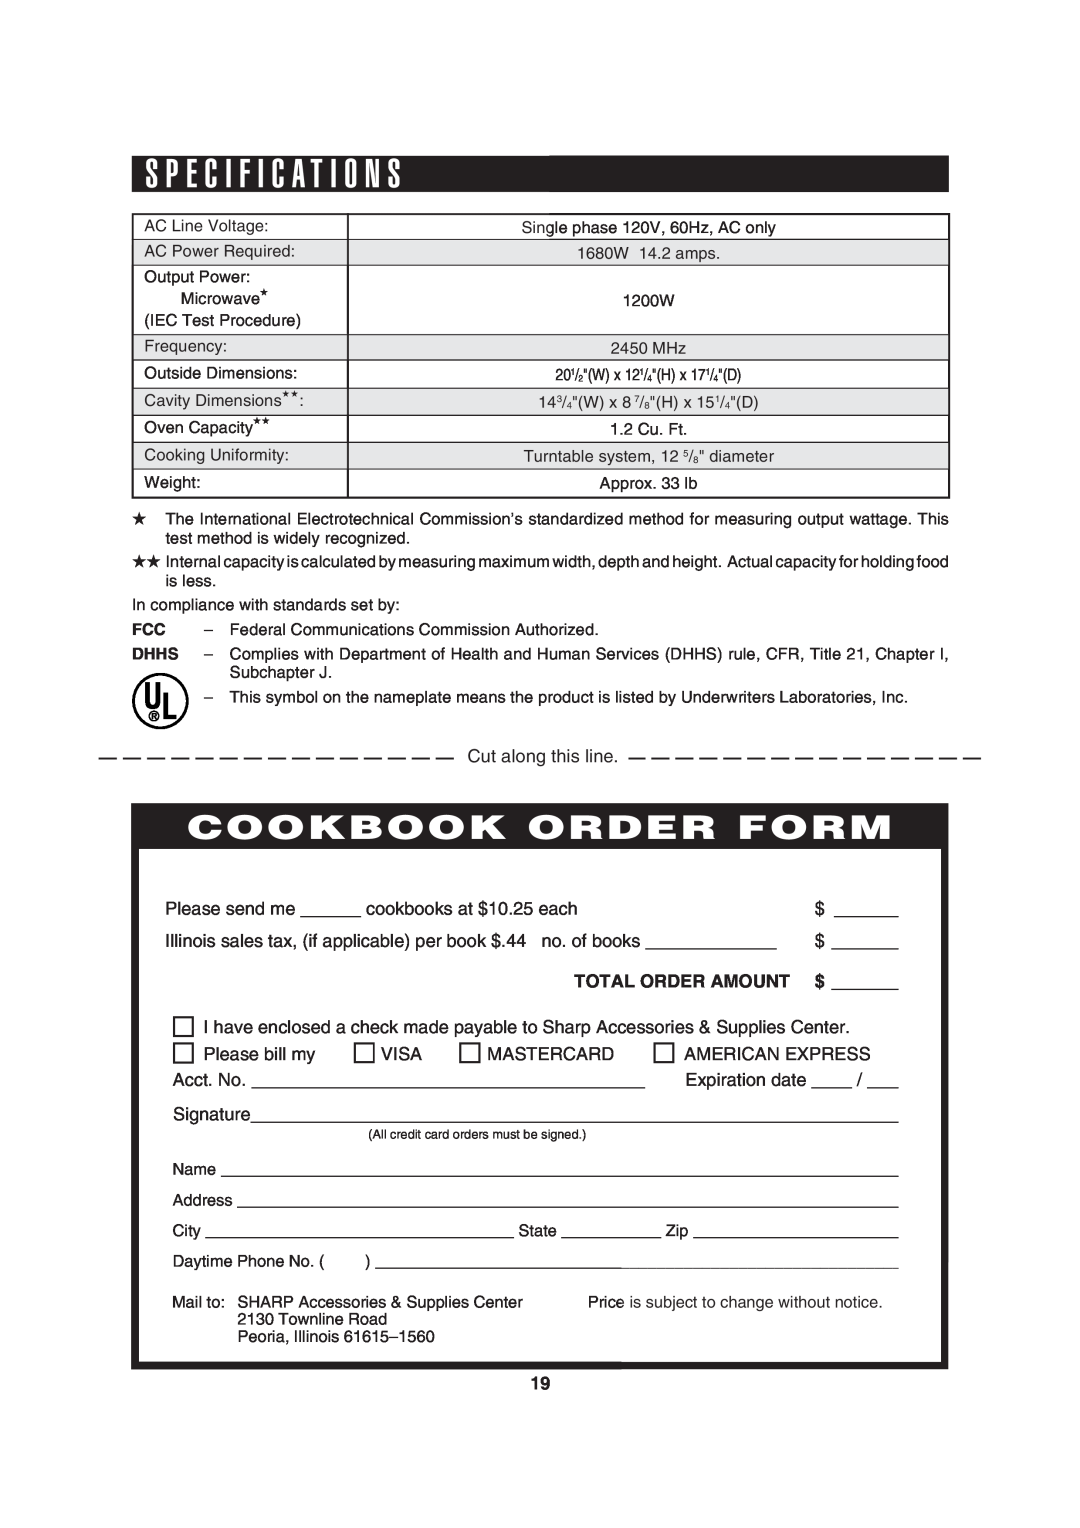 Sharp R-310H operation manual S P E C I F I C A T I O N S, Cookbook Order Form, Total Order Amount 